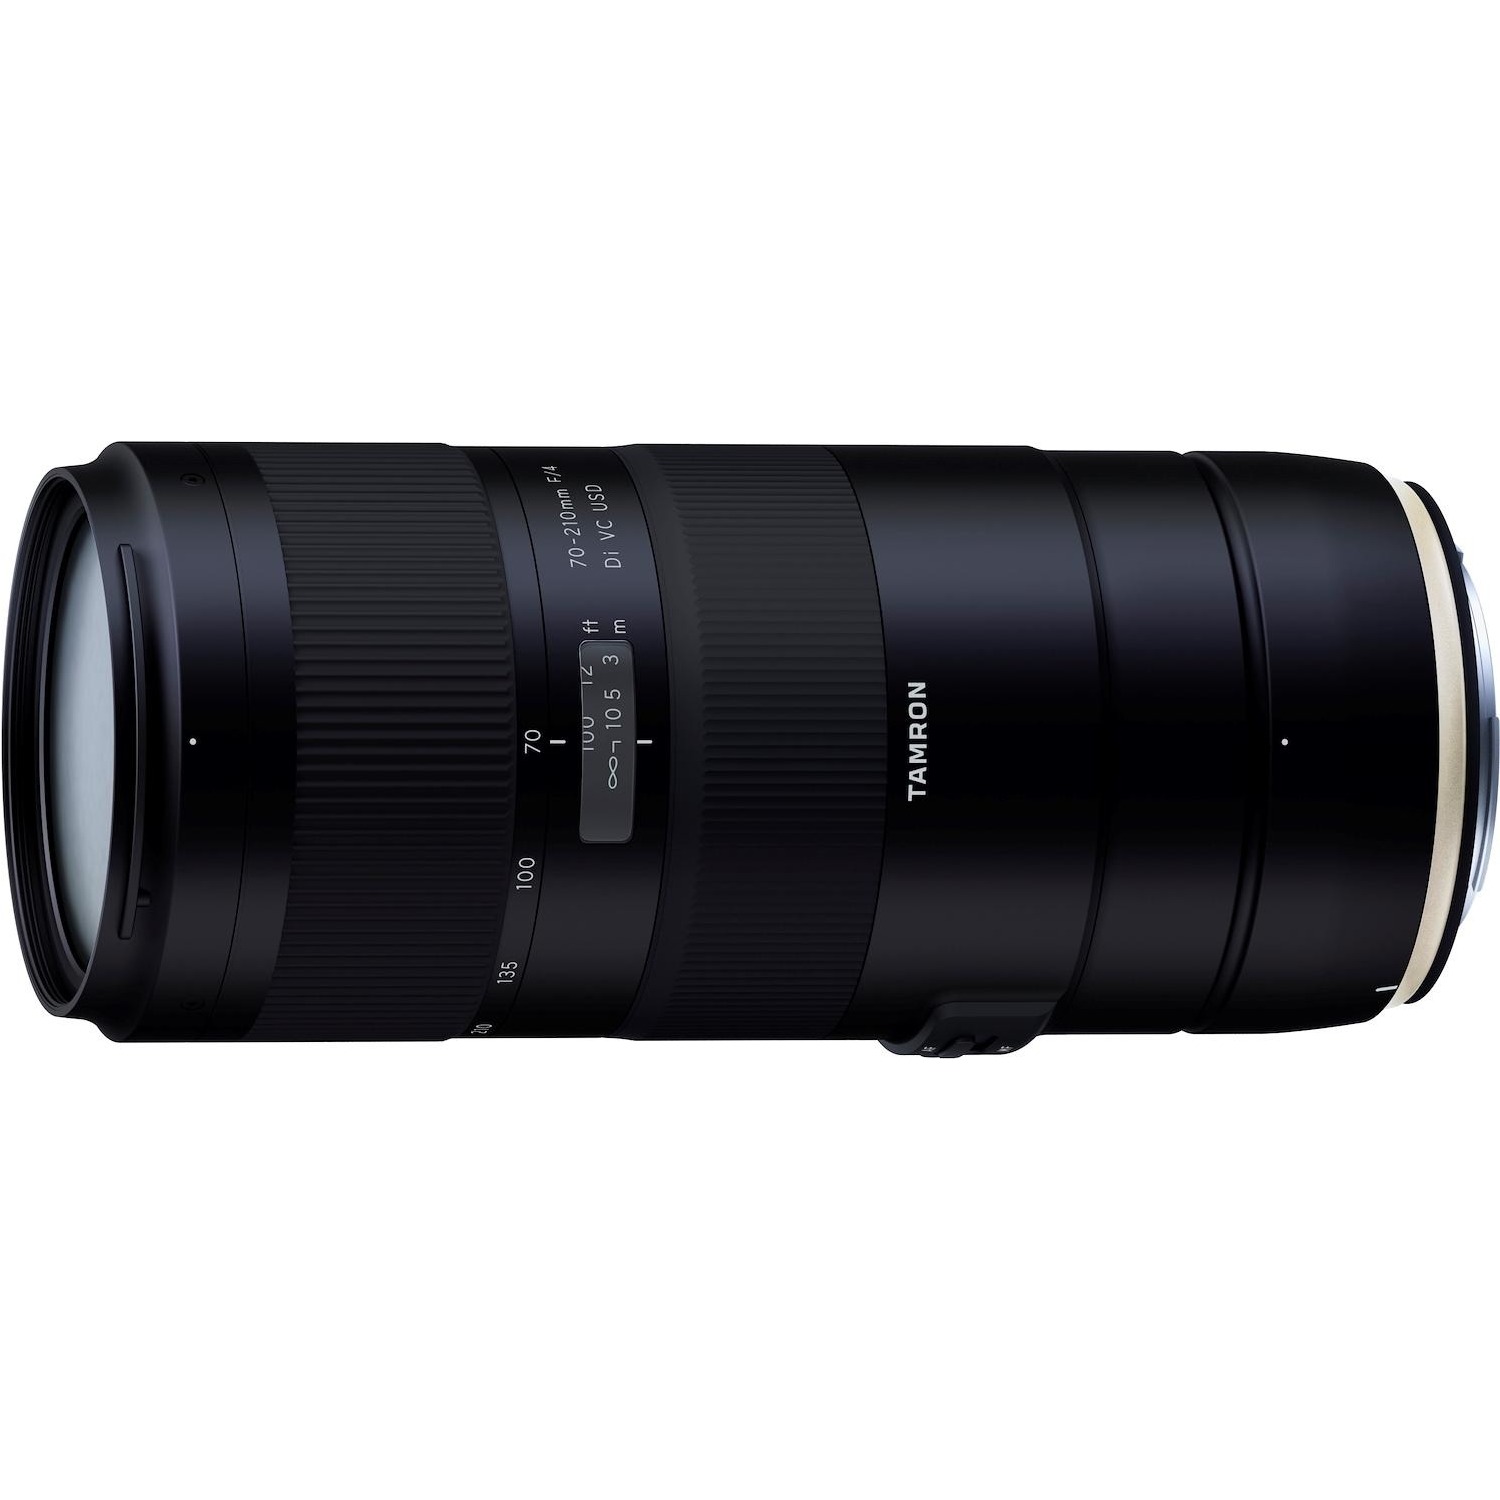 Immagine per Obiettivo Tamron 70-210mm F4 SP attacco Nikon     stabilizzato filtri da 67mm da DIMOStore